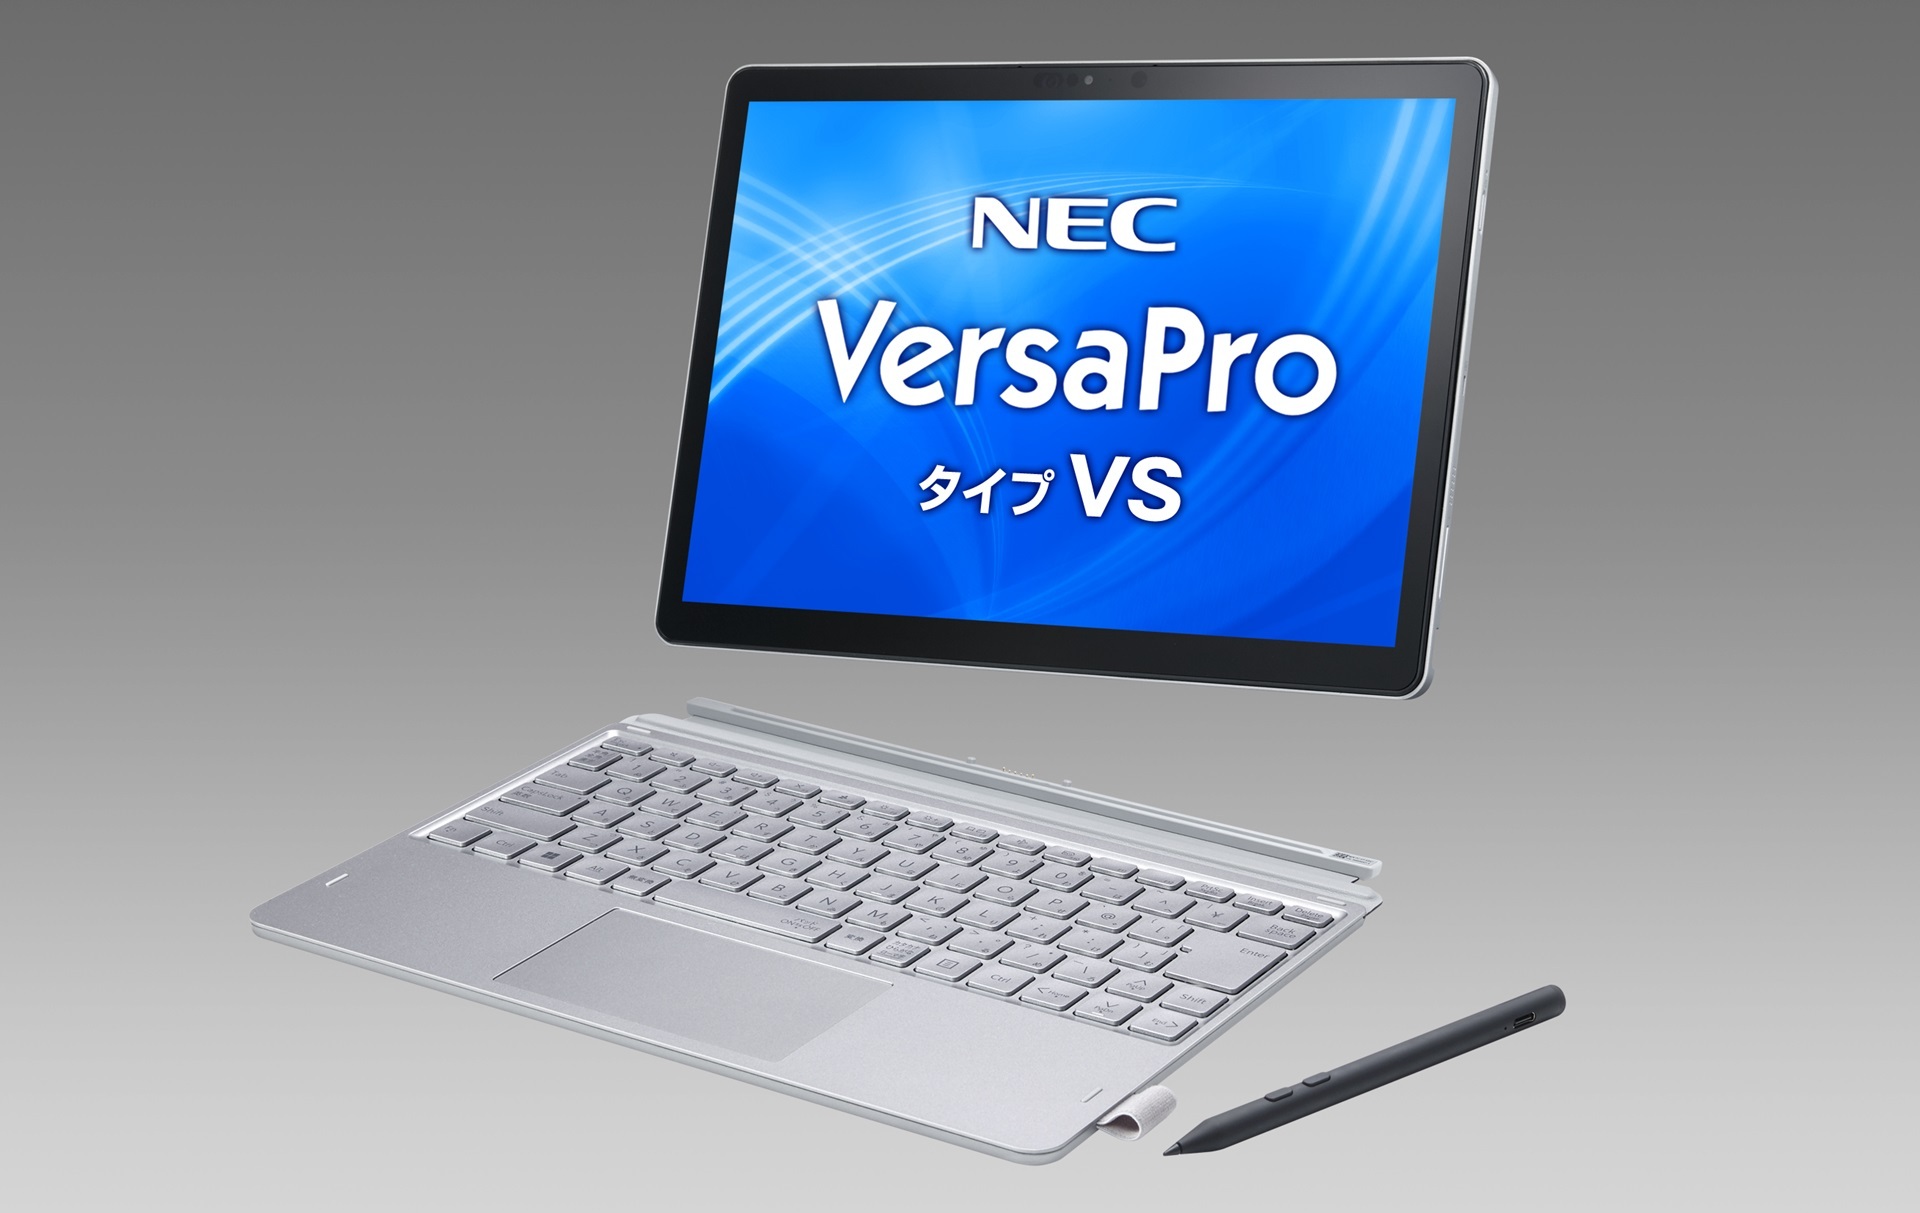  タブレットPC「VersaProタイプVS」。従来比で約45g軽量化し約728gに